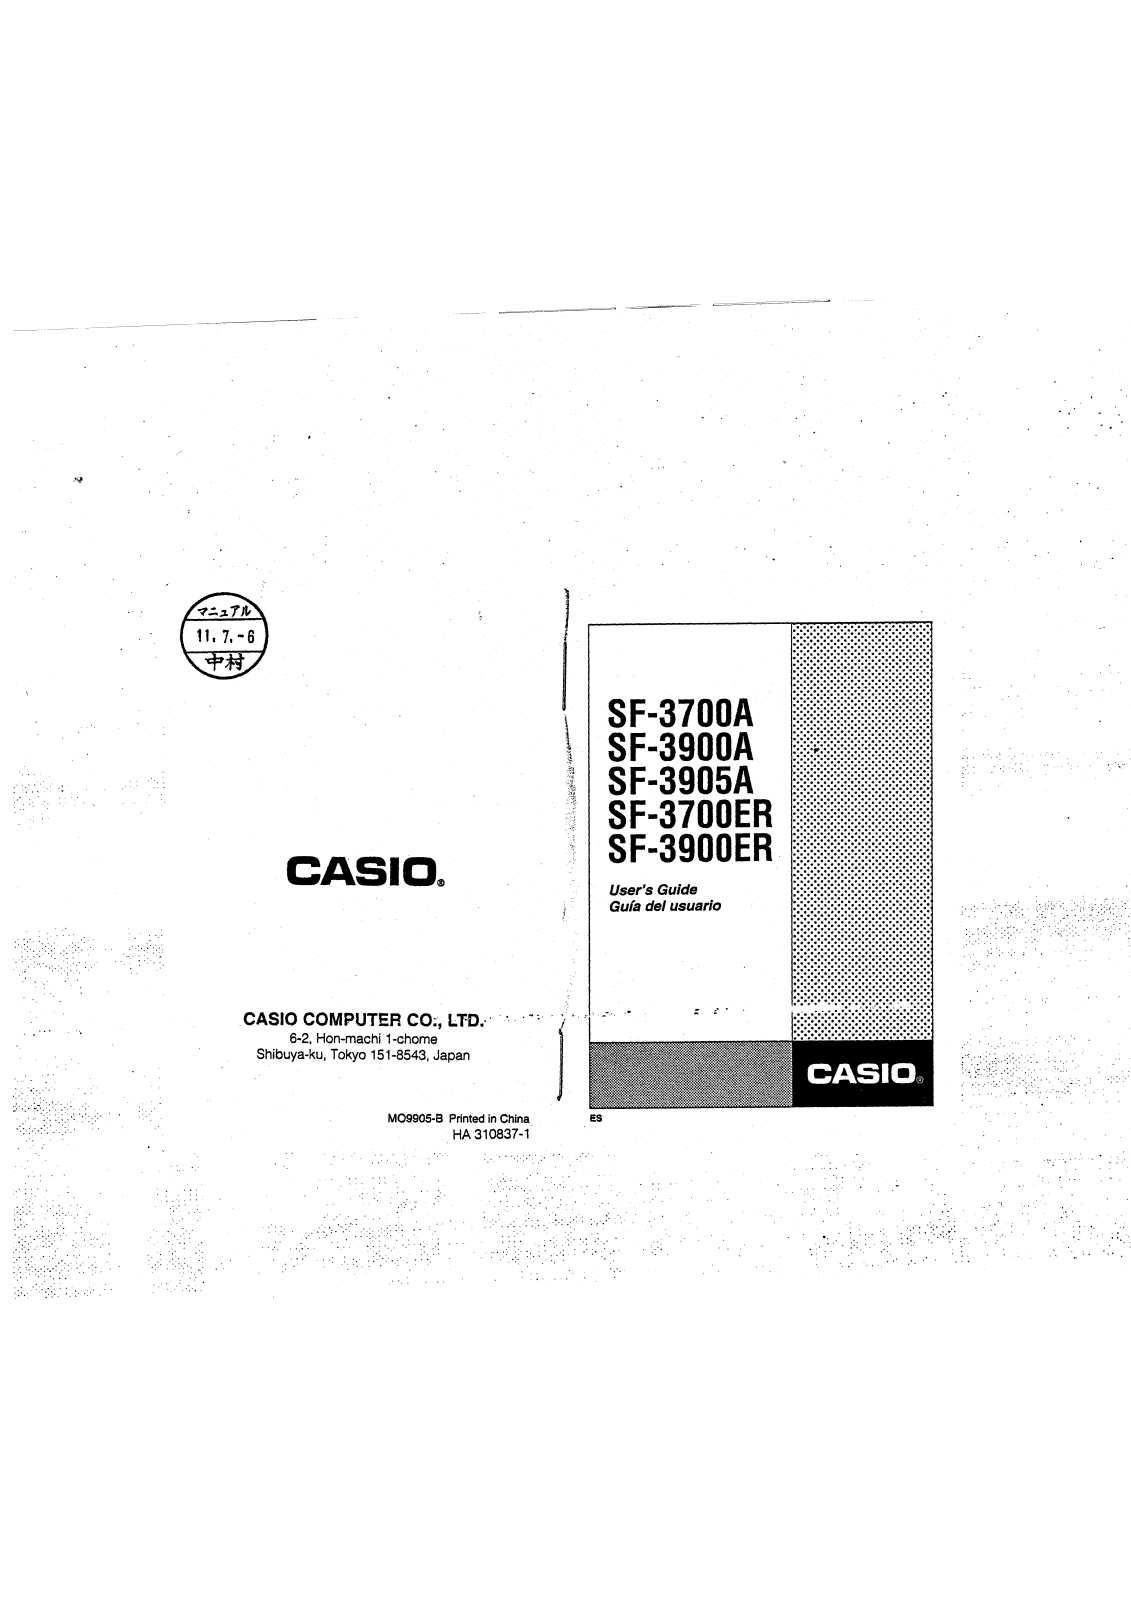 CASIO SF-3905A, SF-3900A, SF-3900ER, SF-3700ER, SF-3700A User Manual